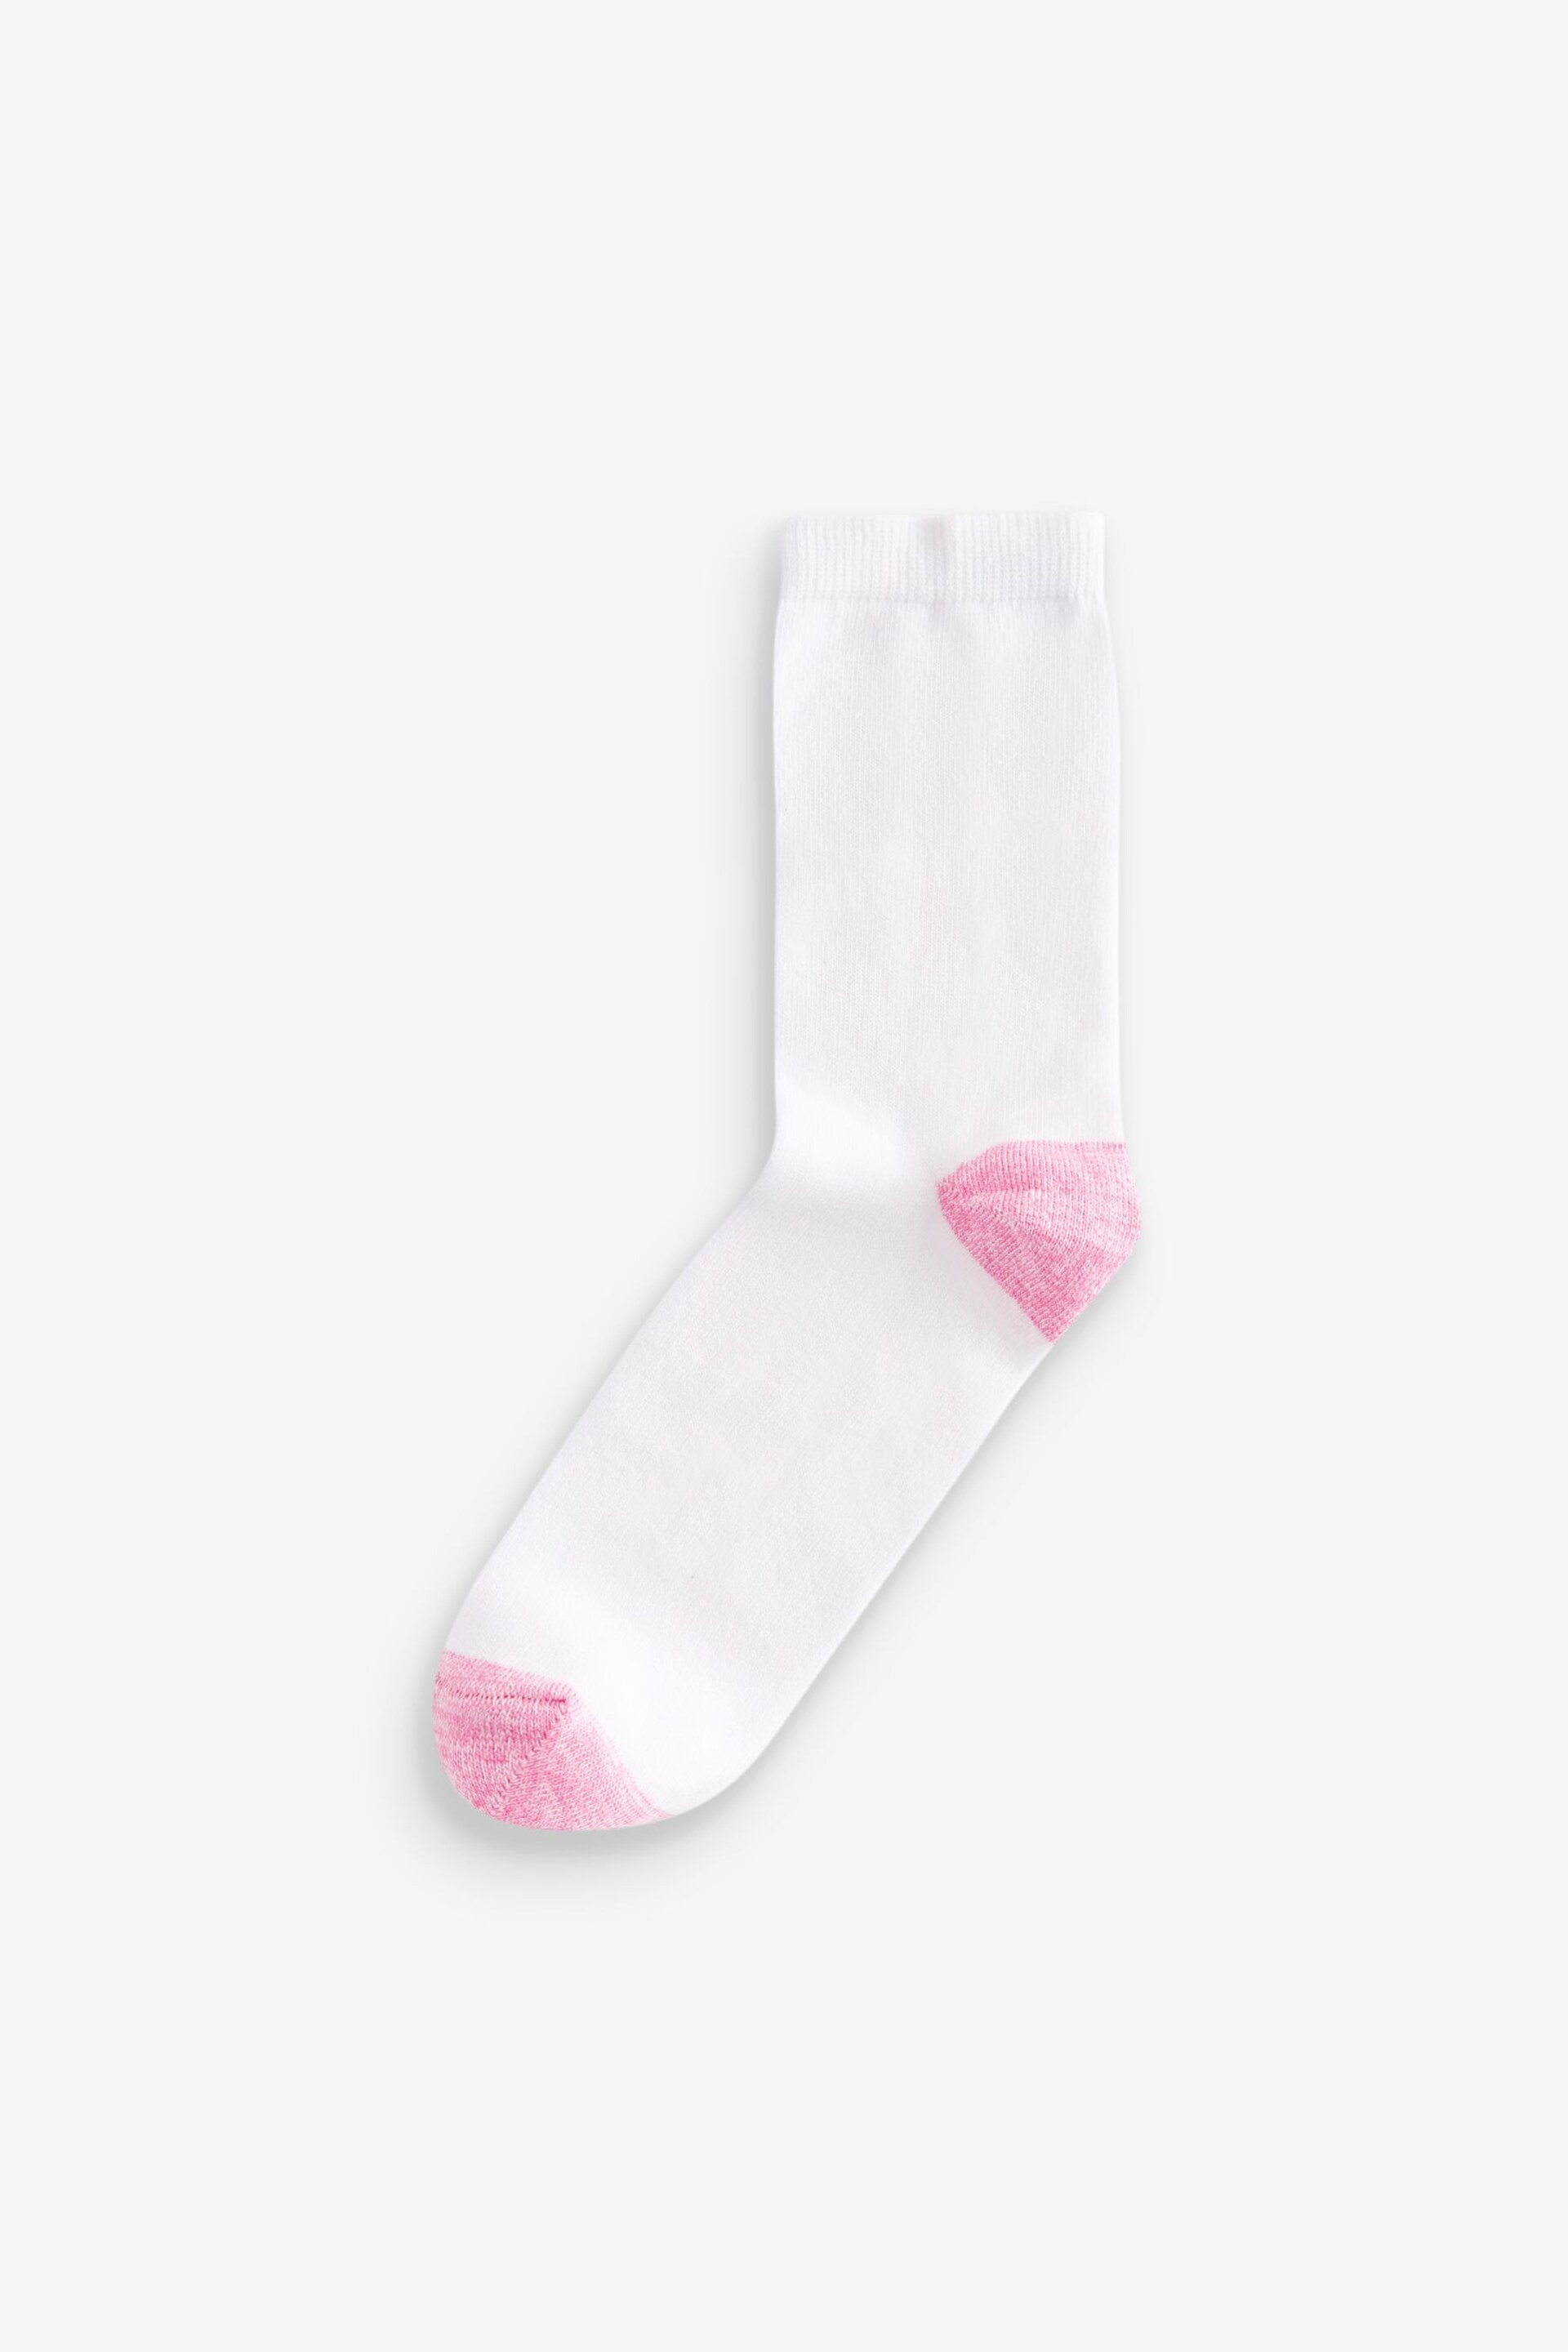 White Ankle Socks 4 Pack - Image 3 of 6